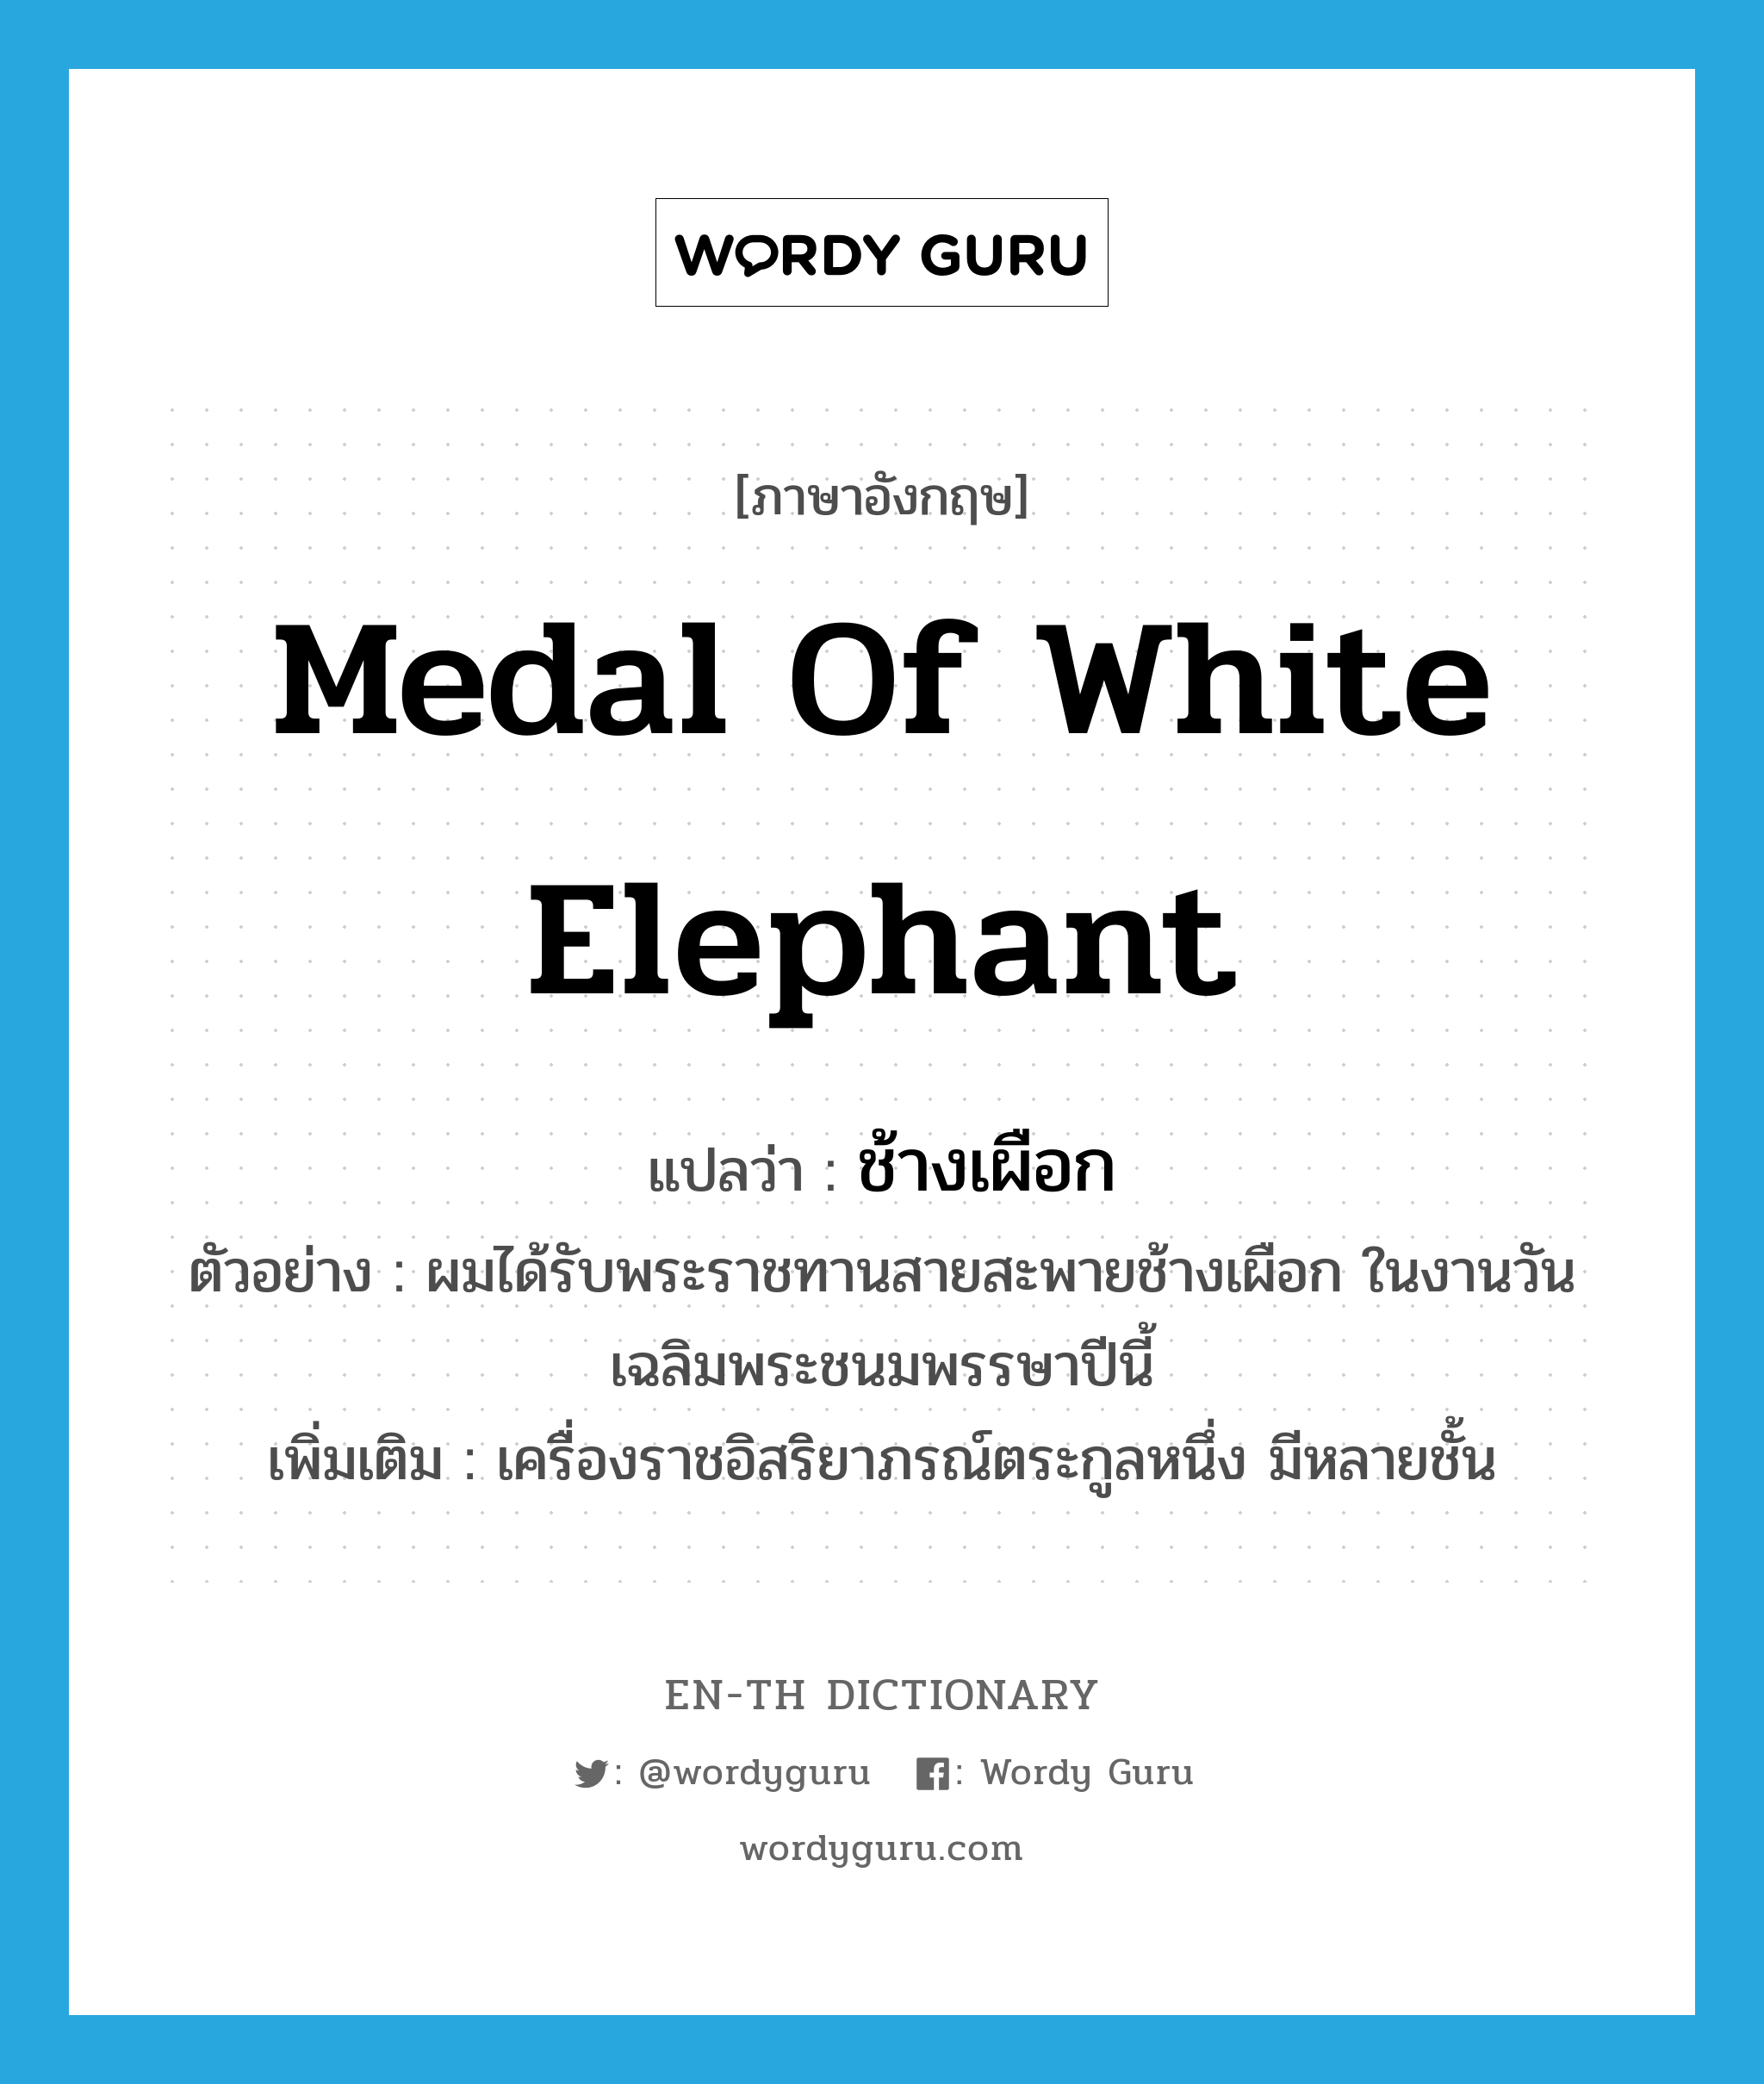 ช้างเผือก ภาษาอังกฤษ?, คำศัพท์ภาษาอังกฤษ ช้างเผือก แปลว่า Medal of White Elephant ประเภท N ตัวอย่าง ผมได้รับพระราชทานสายสะพายช้างเผือก ในงานวันเฉลิมพระชนมพรรษาปีนี้ เพิ่มเติม เครื่องราชอิสริยาภรณ์ตระกูลหนึ่ง มีหลายชั้น หมวด N